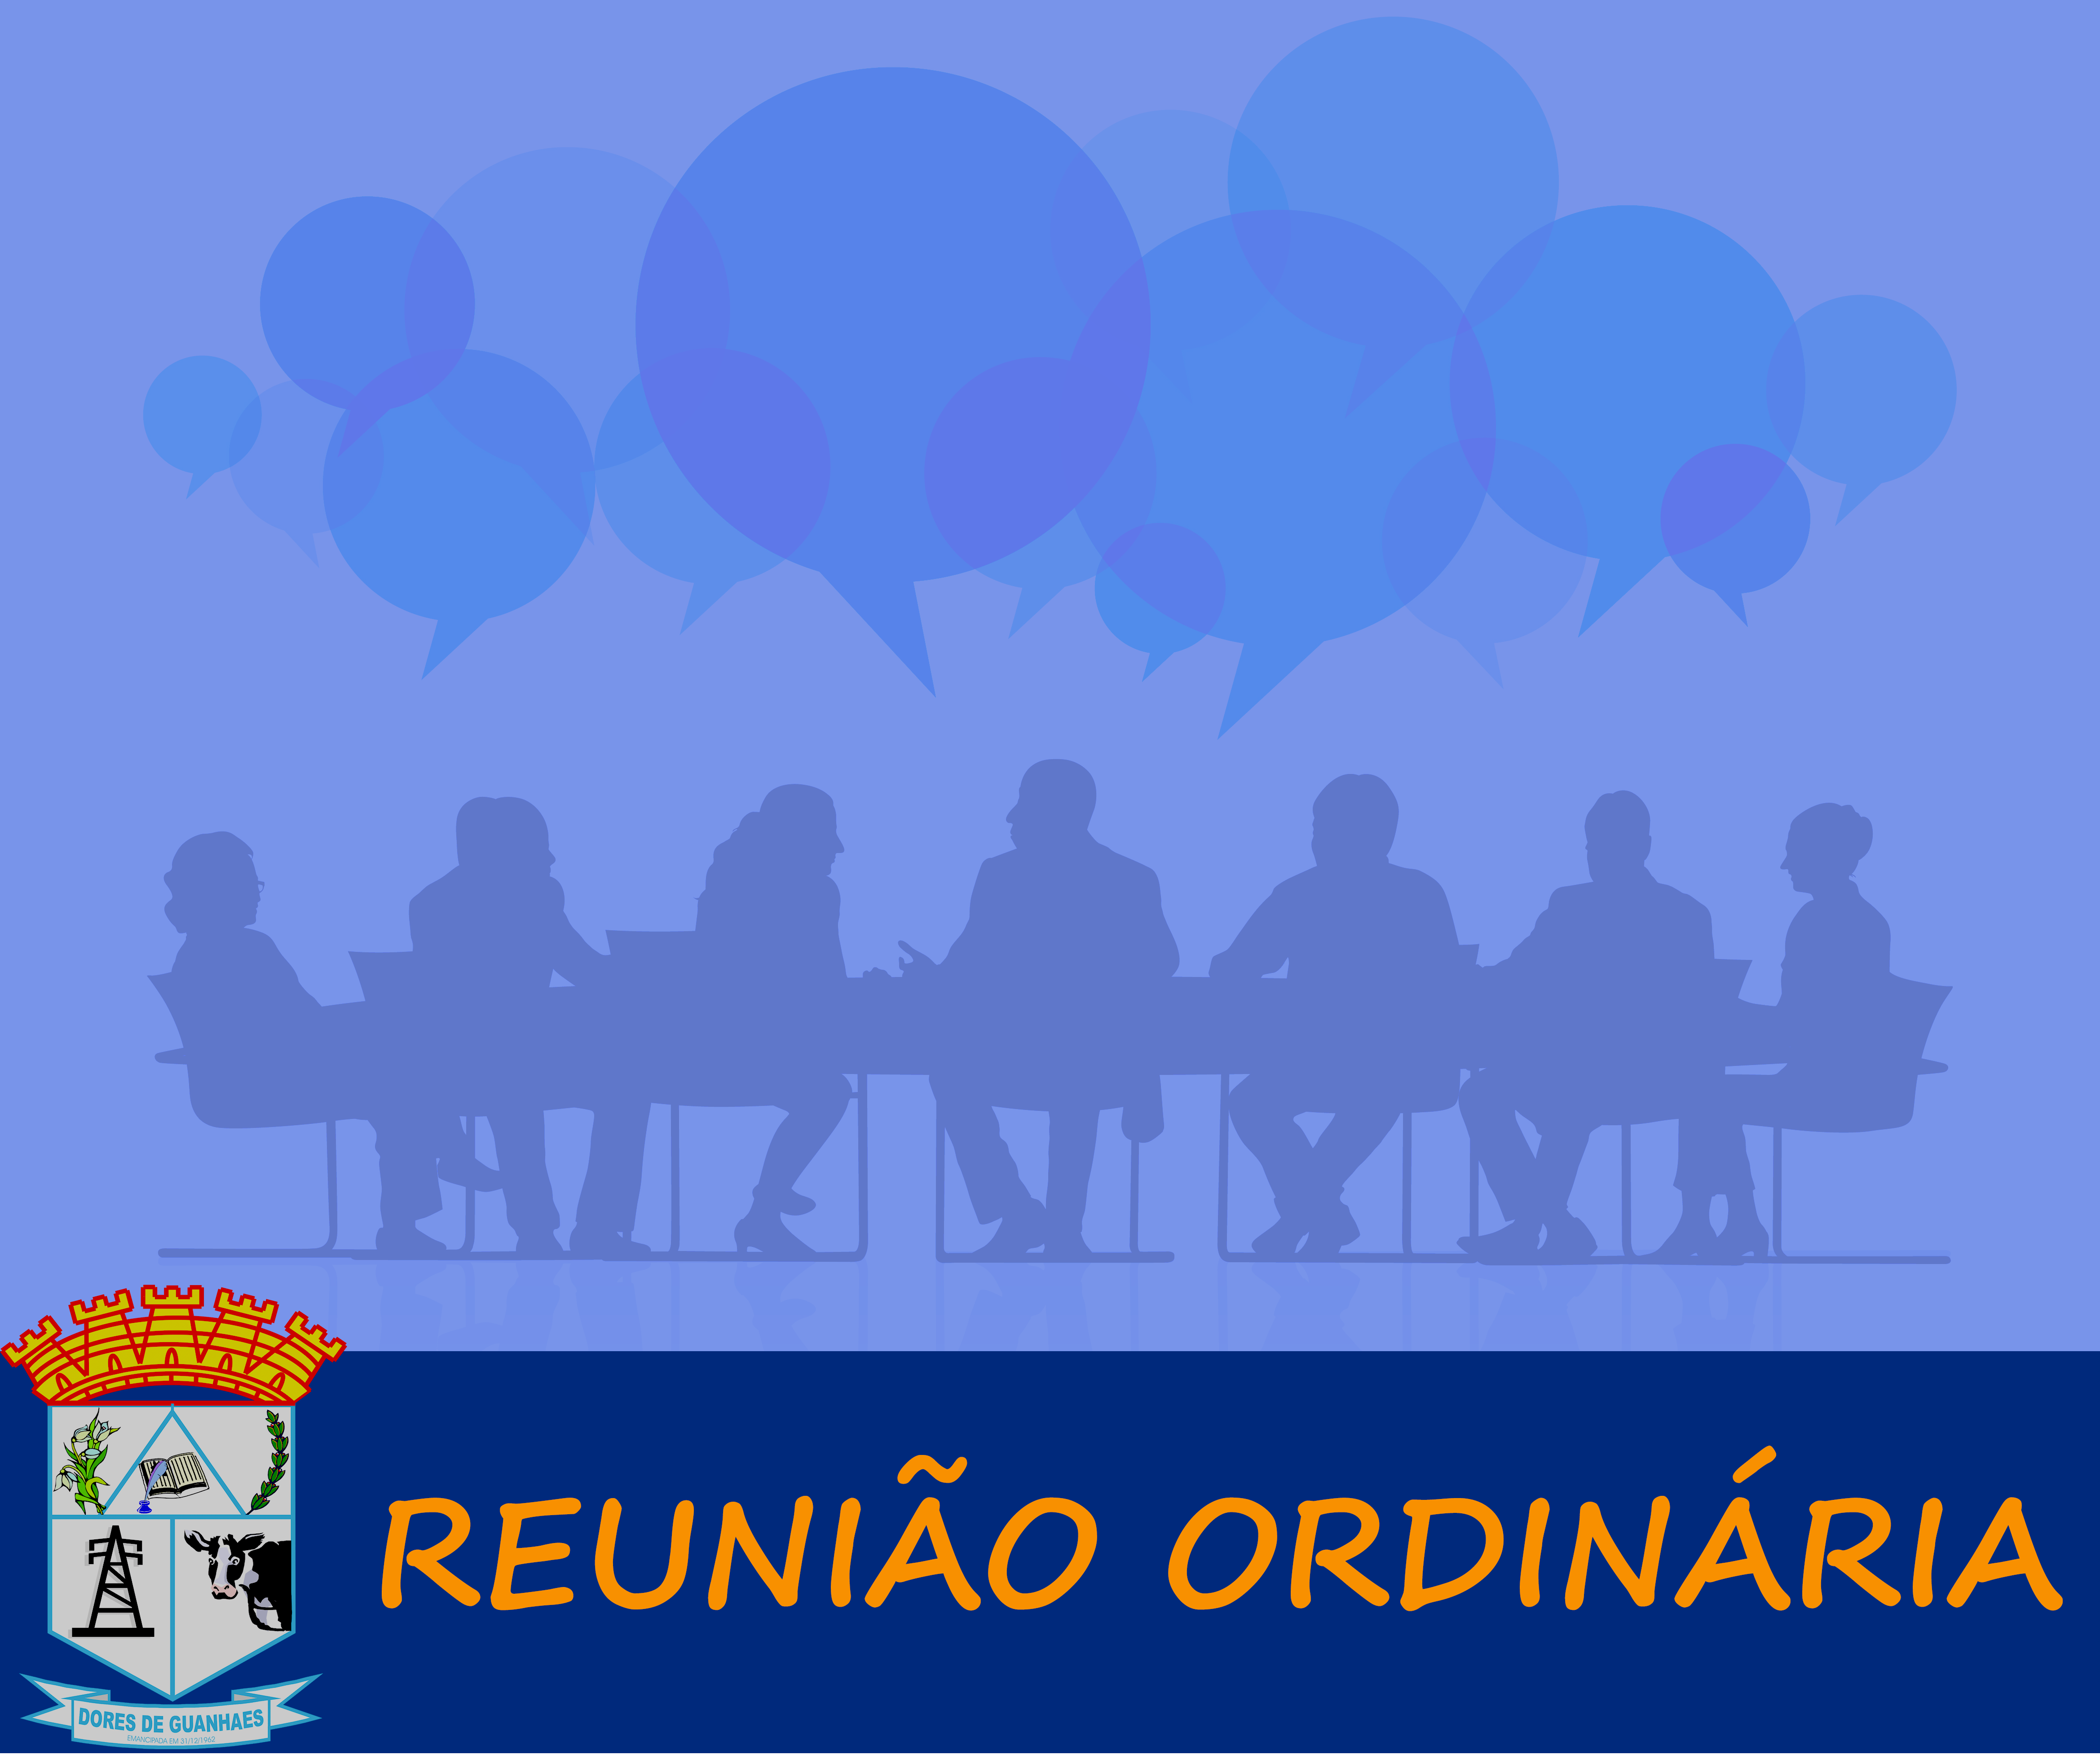 You are currently viewing Reunião Ordinária Nº 04 de 17 de Maio de 2021